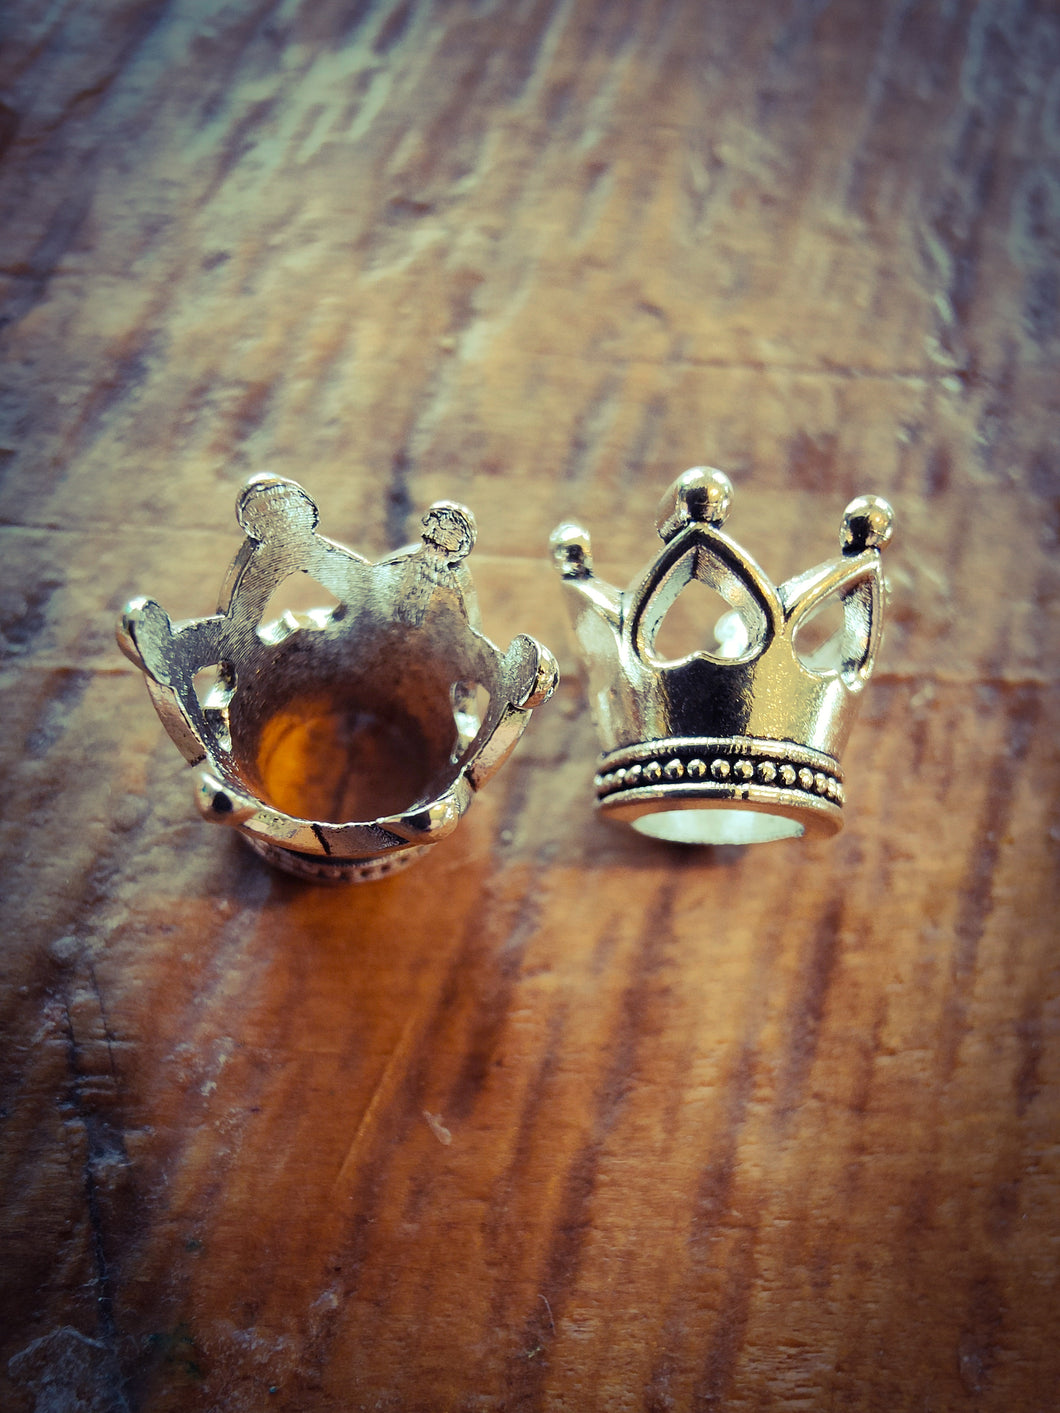 Dread crowns